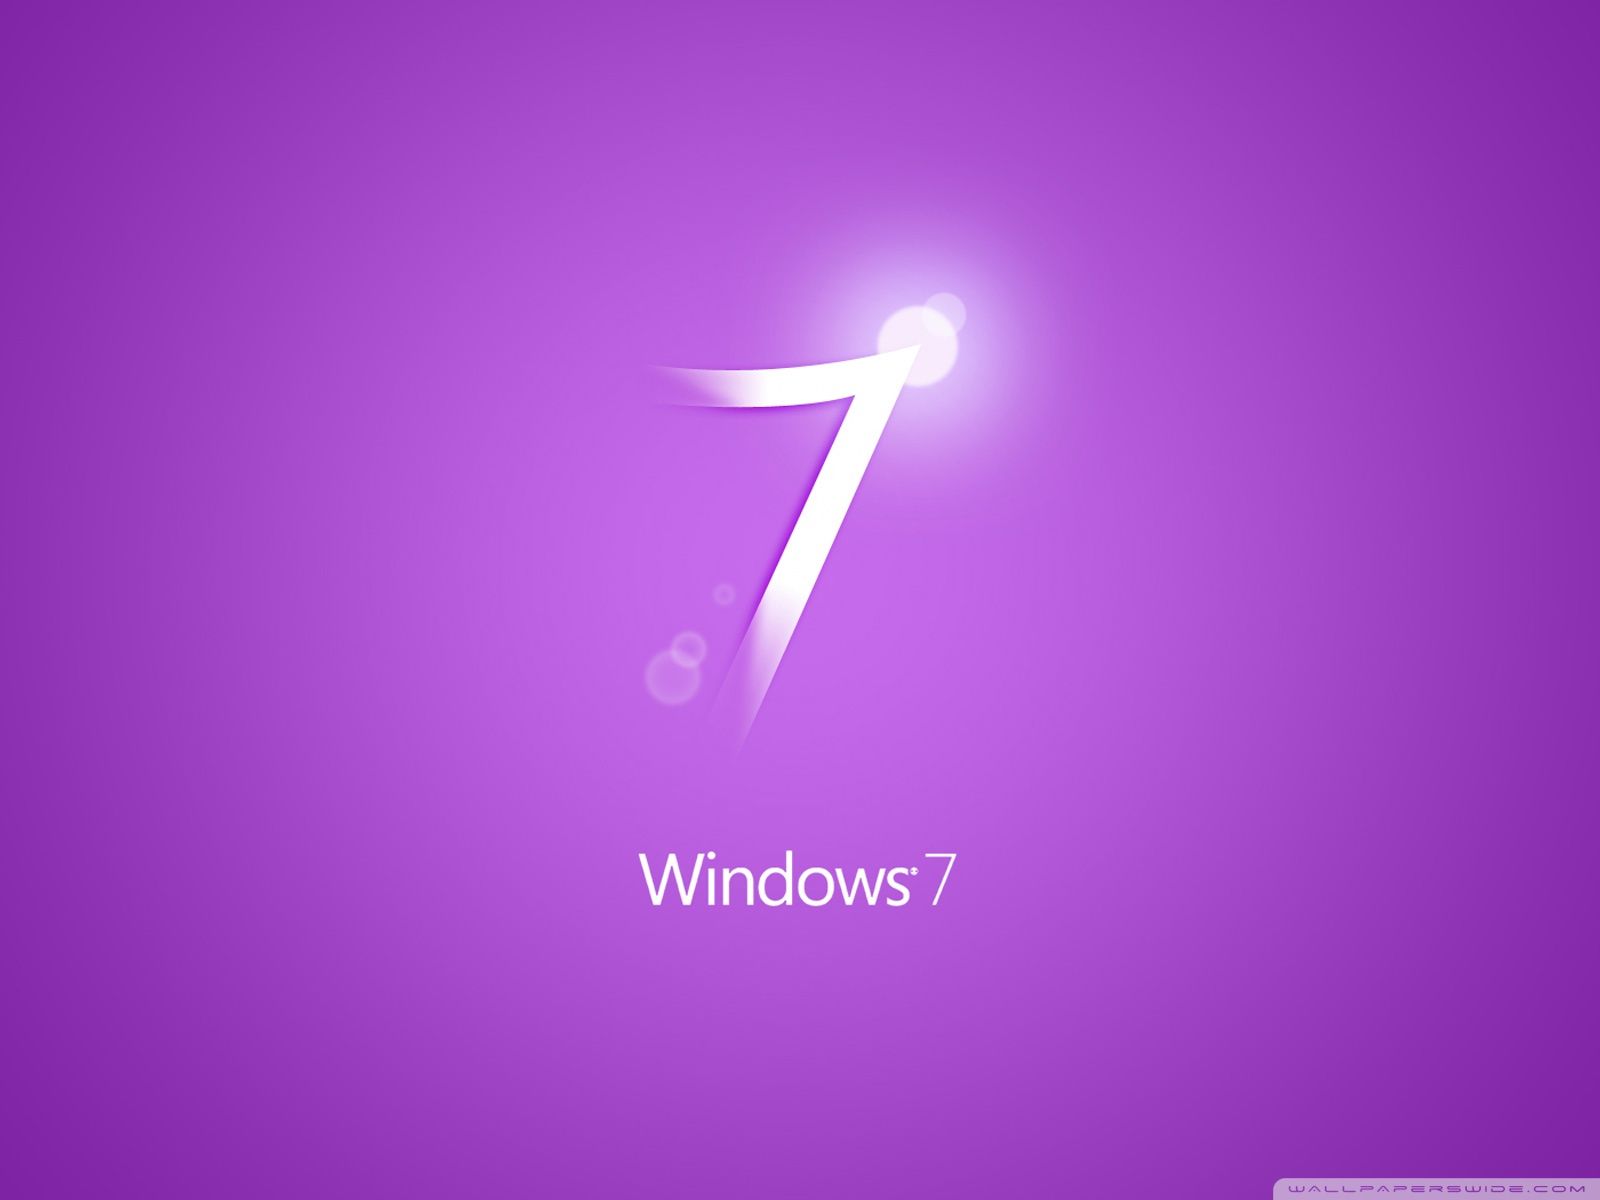 Windows 7 Purple Ultra HD Desktop Background Wallpaper for 4K UHD